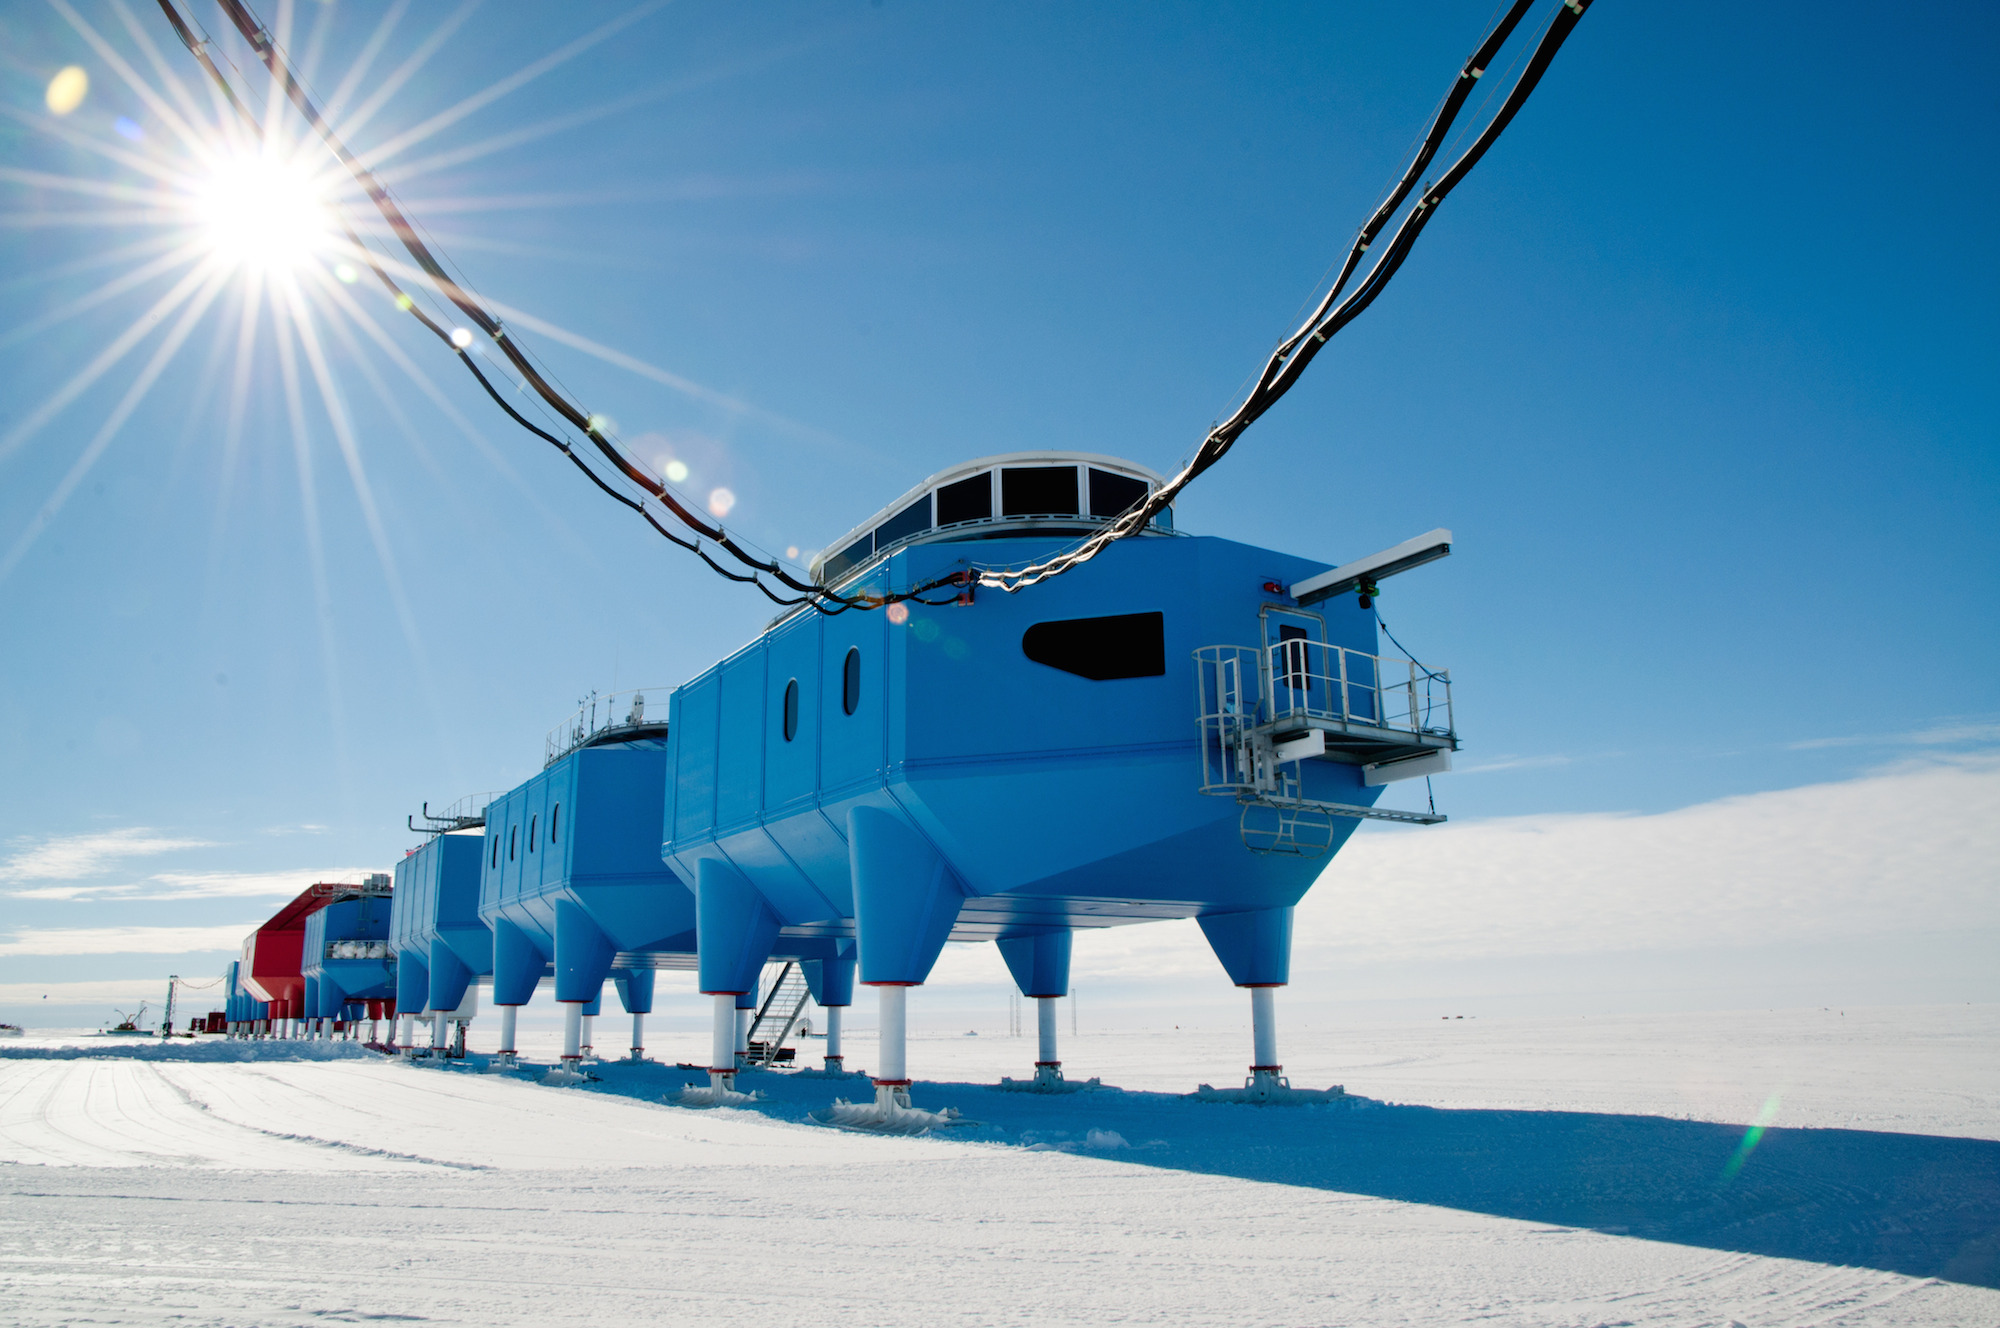 Санаэ антарктическая станция